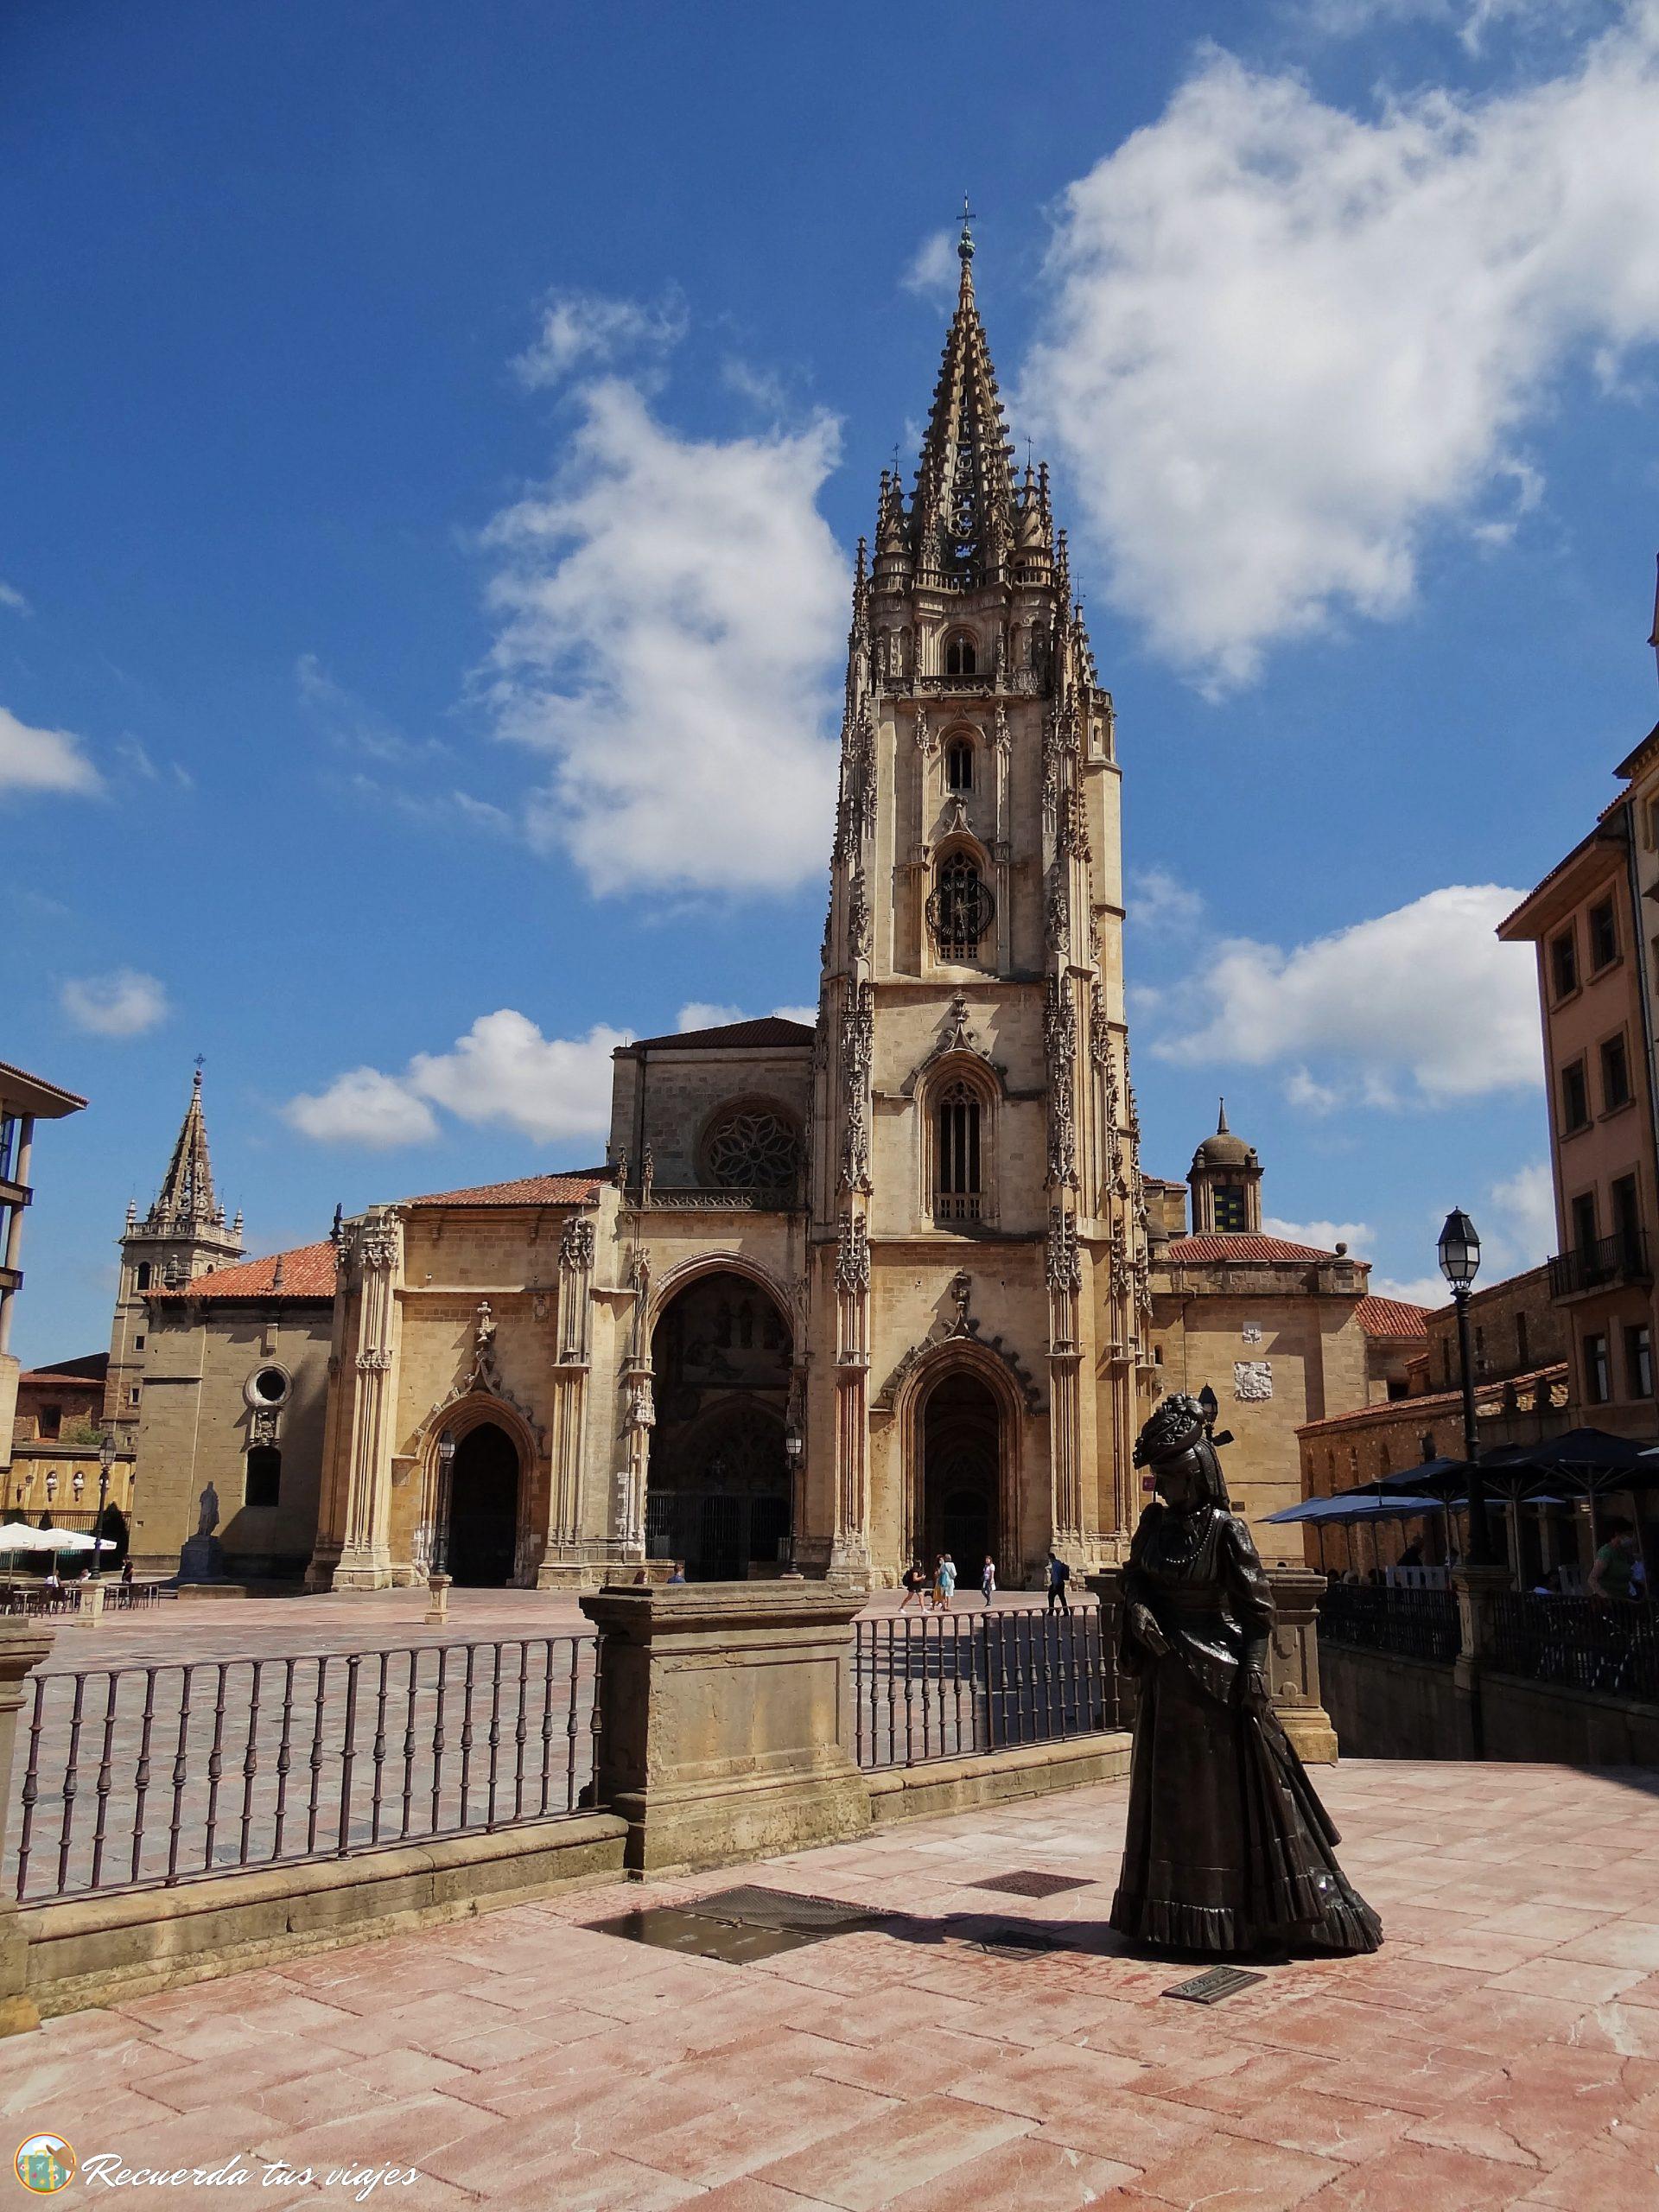 La Regenta en Oviedo: 5 opiniones y 11 fotos